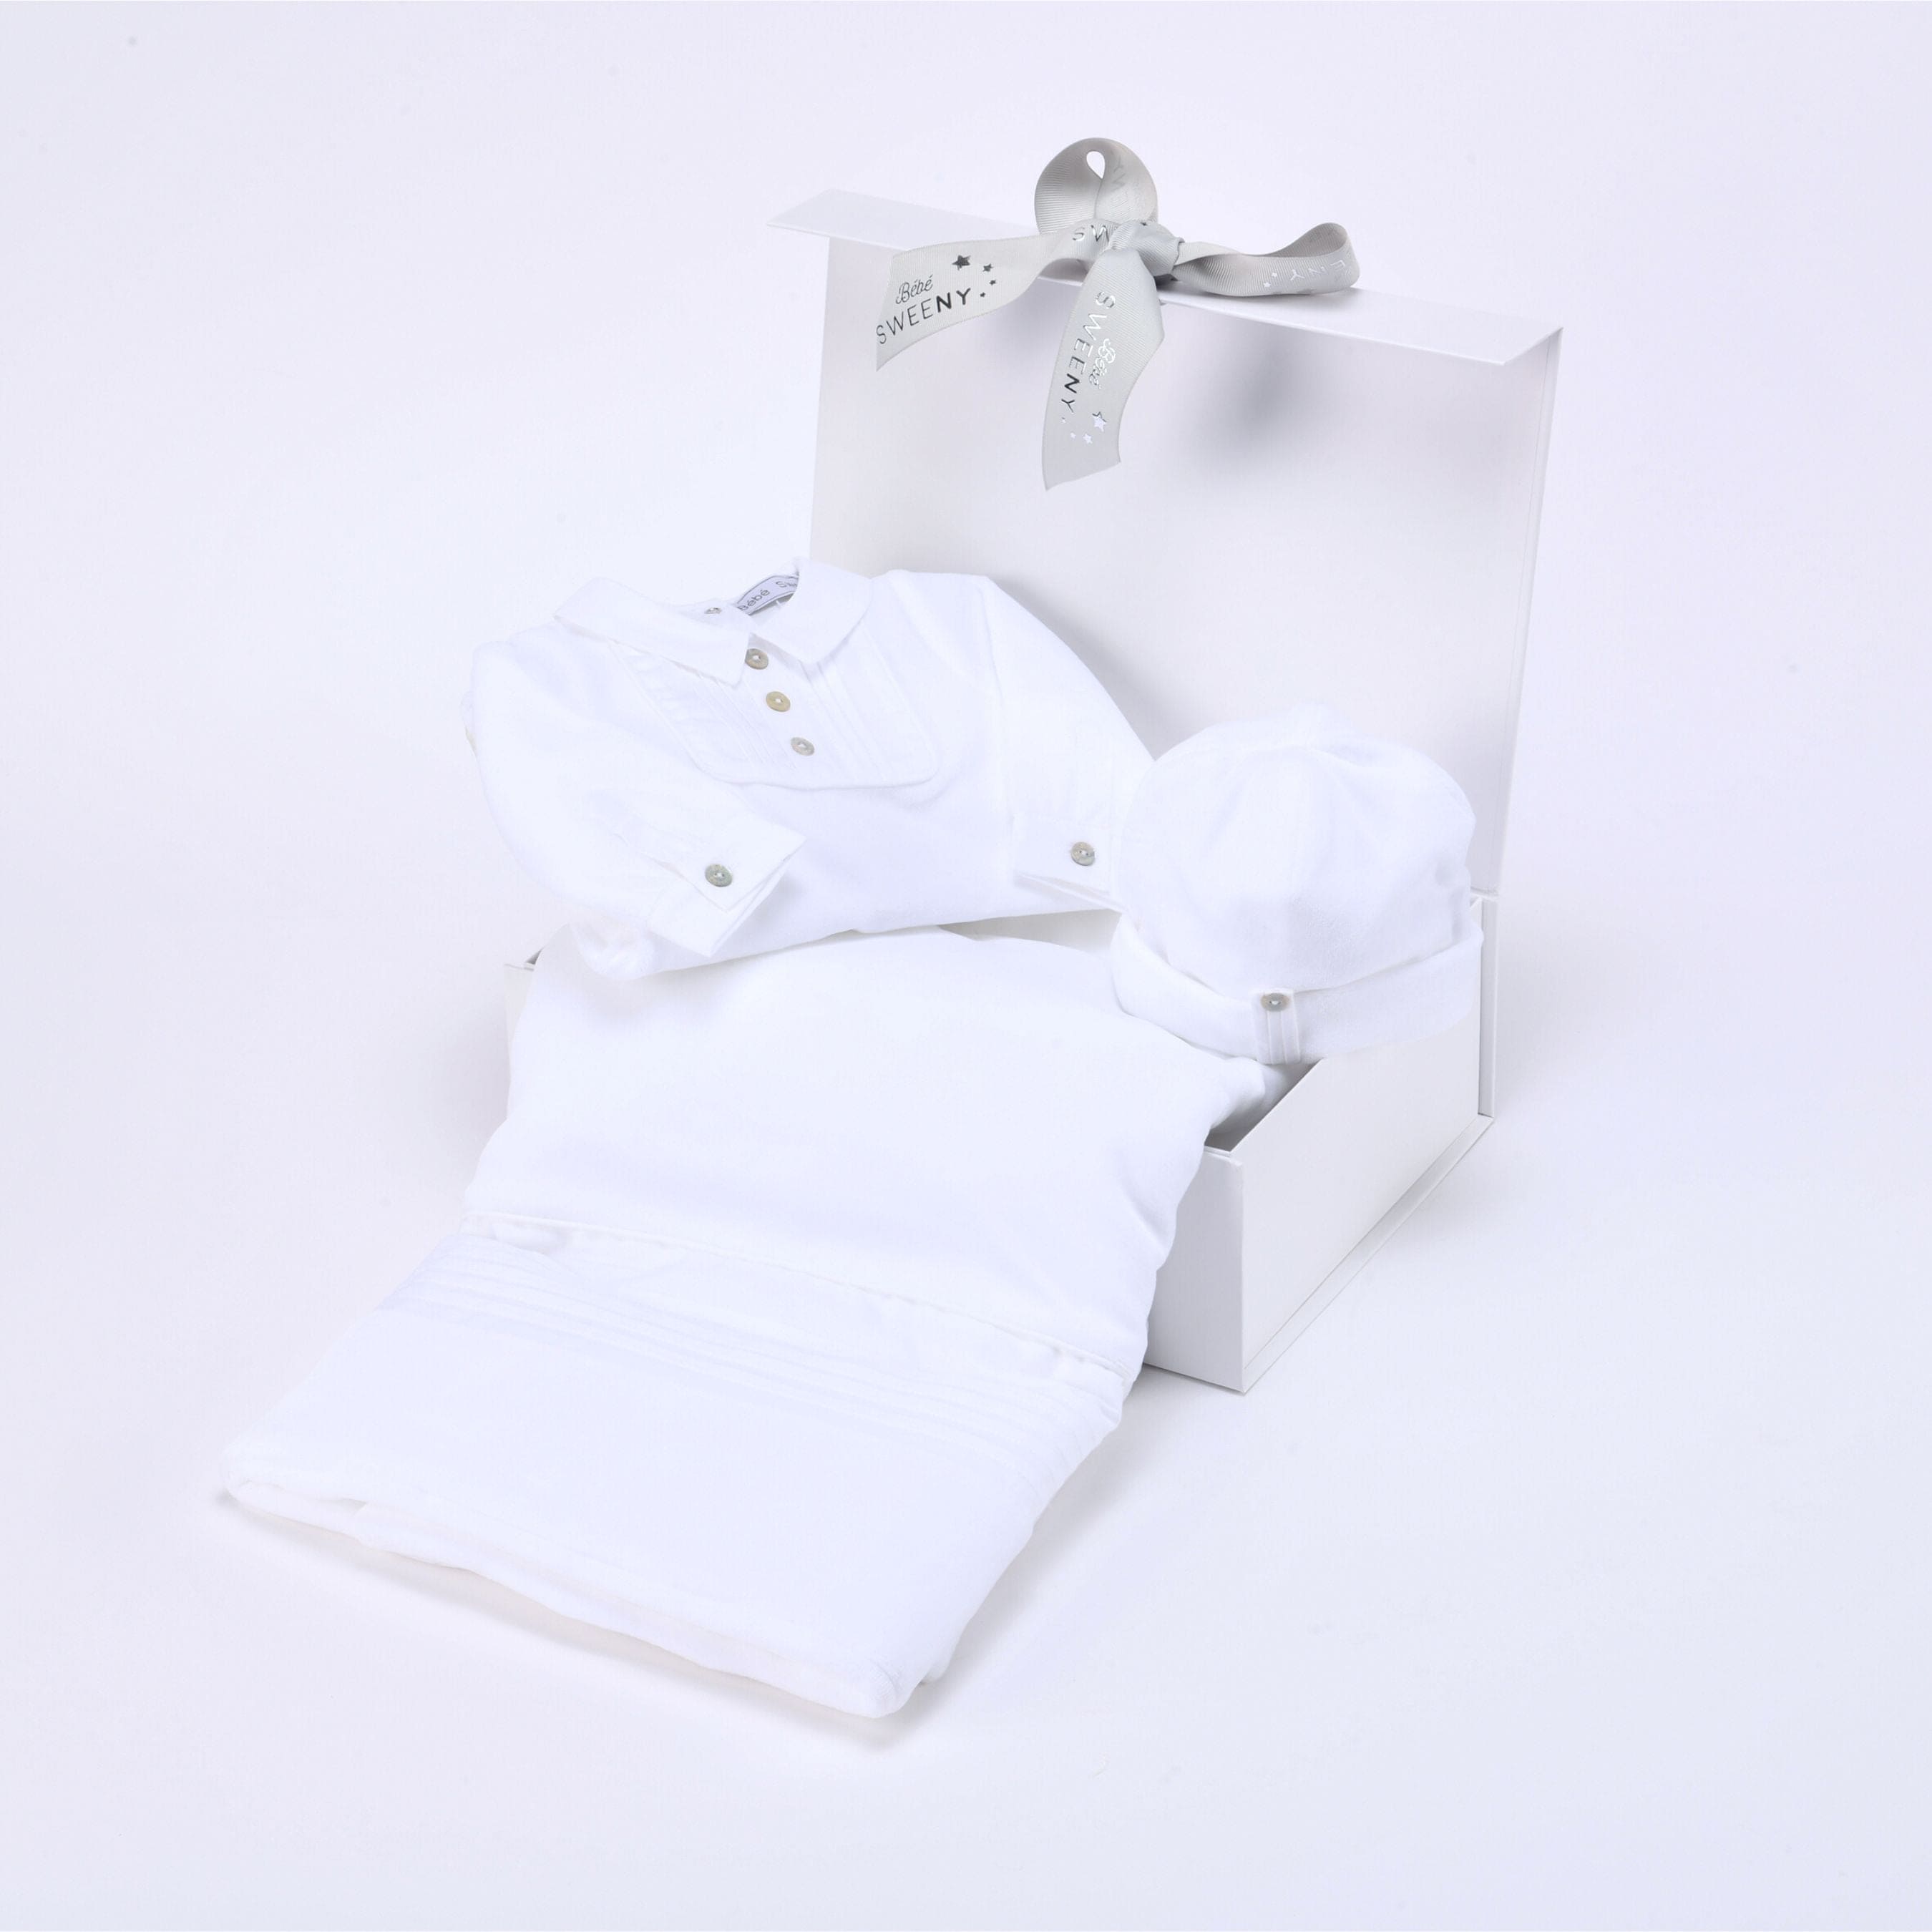 Charles | Baby Boy Gift Box (3) | White Babysuit Set